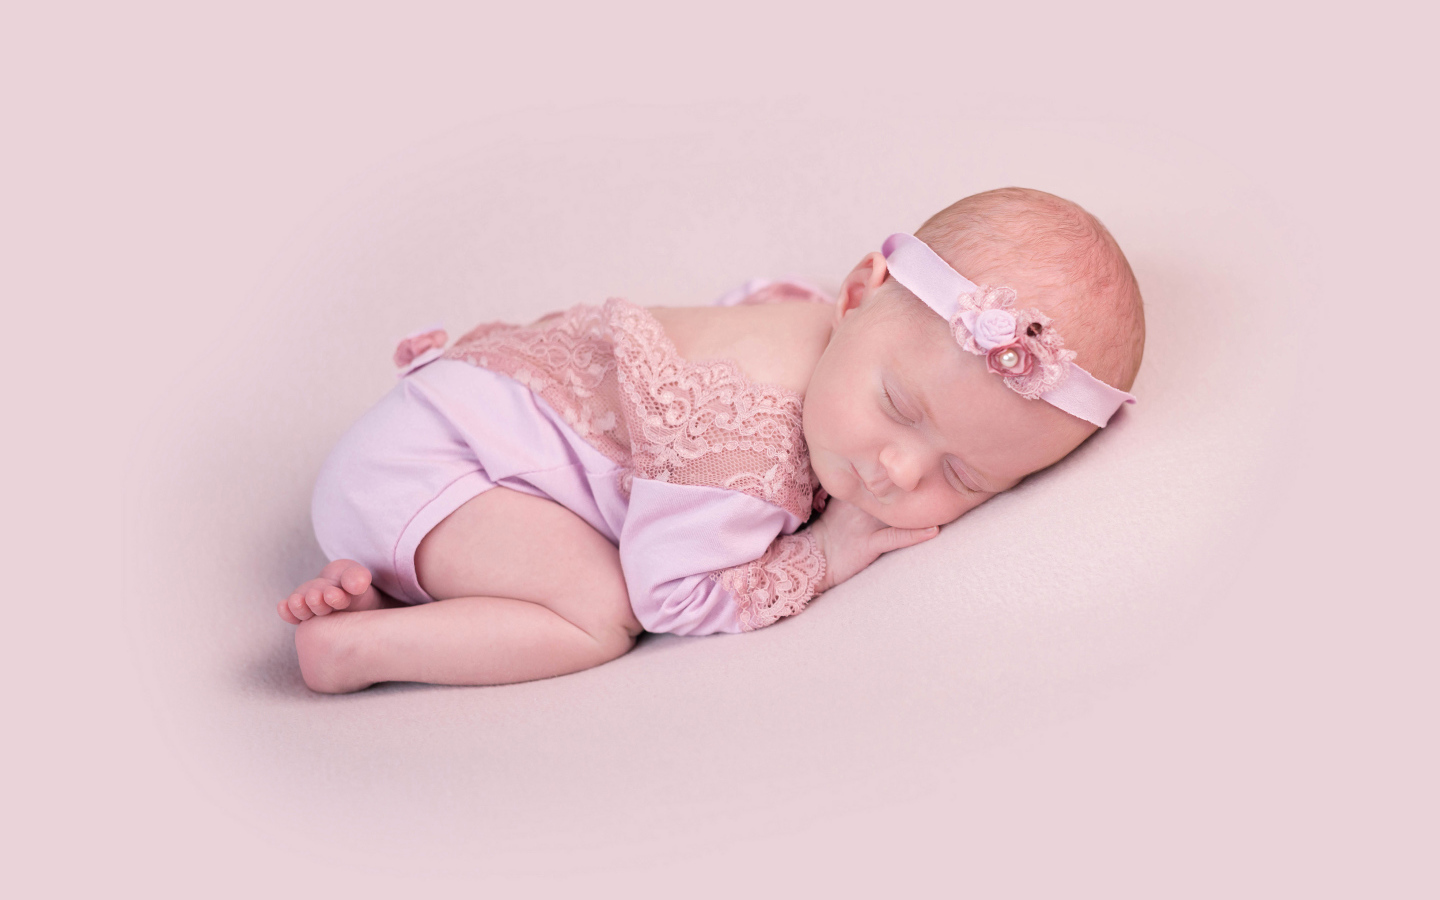 Спящий грудной ребенок на розовом фоне